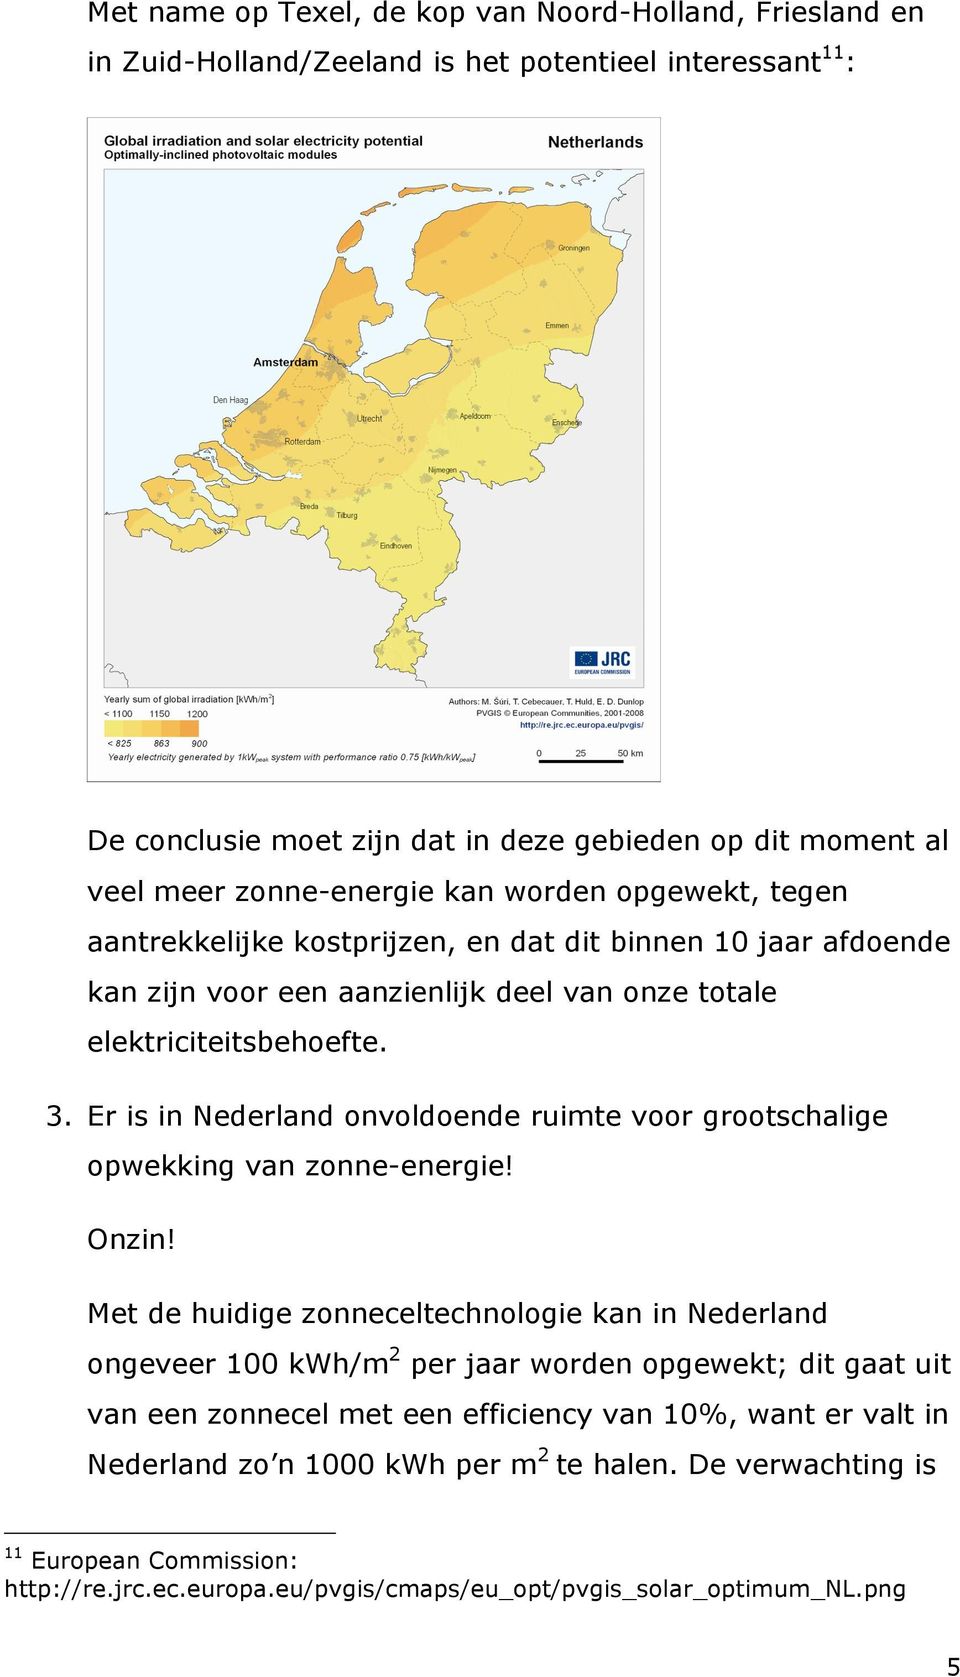 Er is in Nederland onvoldoende ruimte voor grootschalige opwekking van zonne-energie!